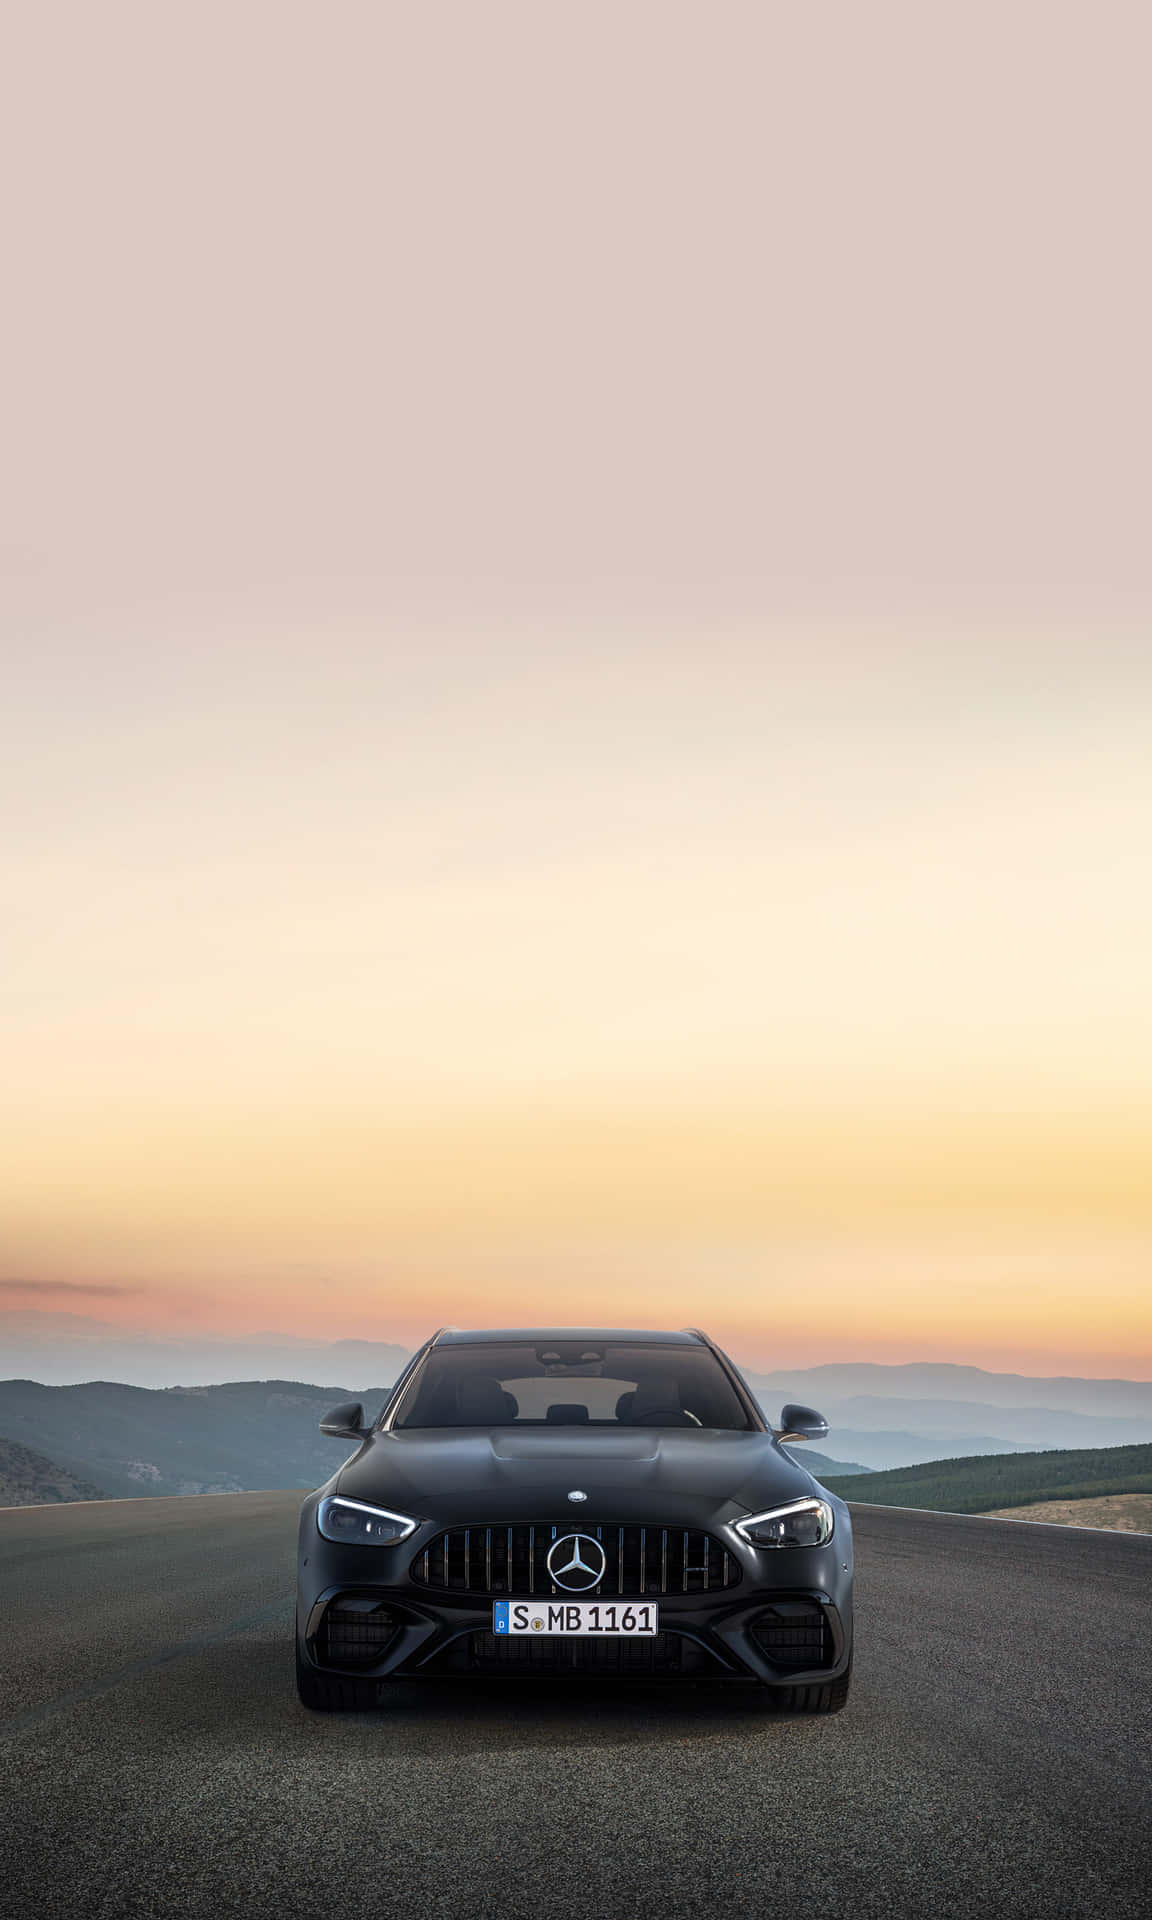 Luxurious Mercedes Benz Phone Concept Wallpaper